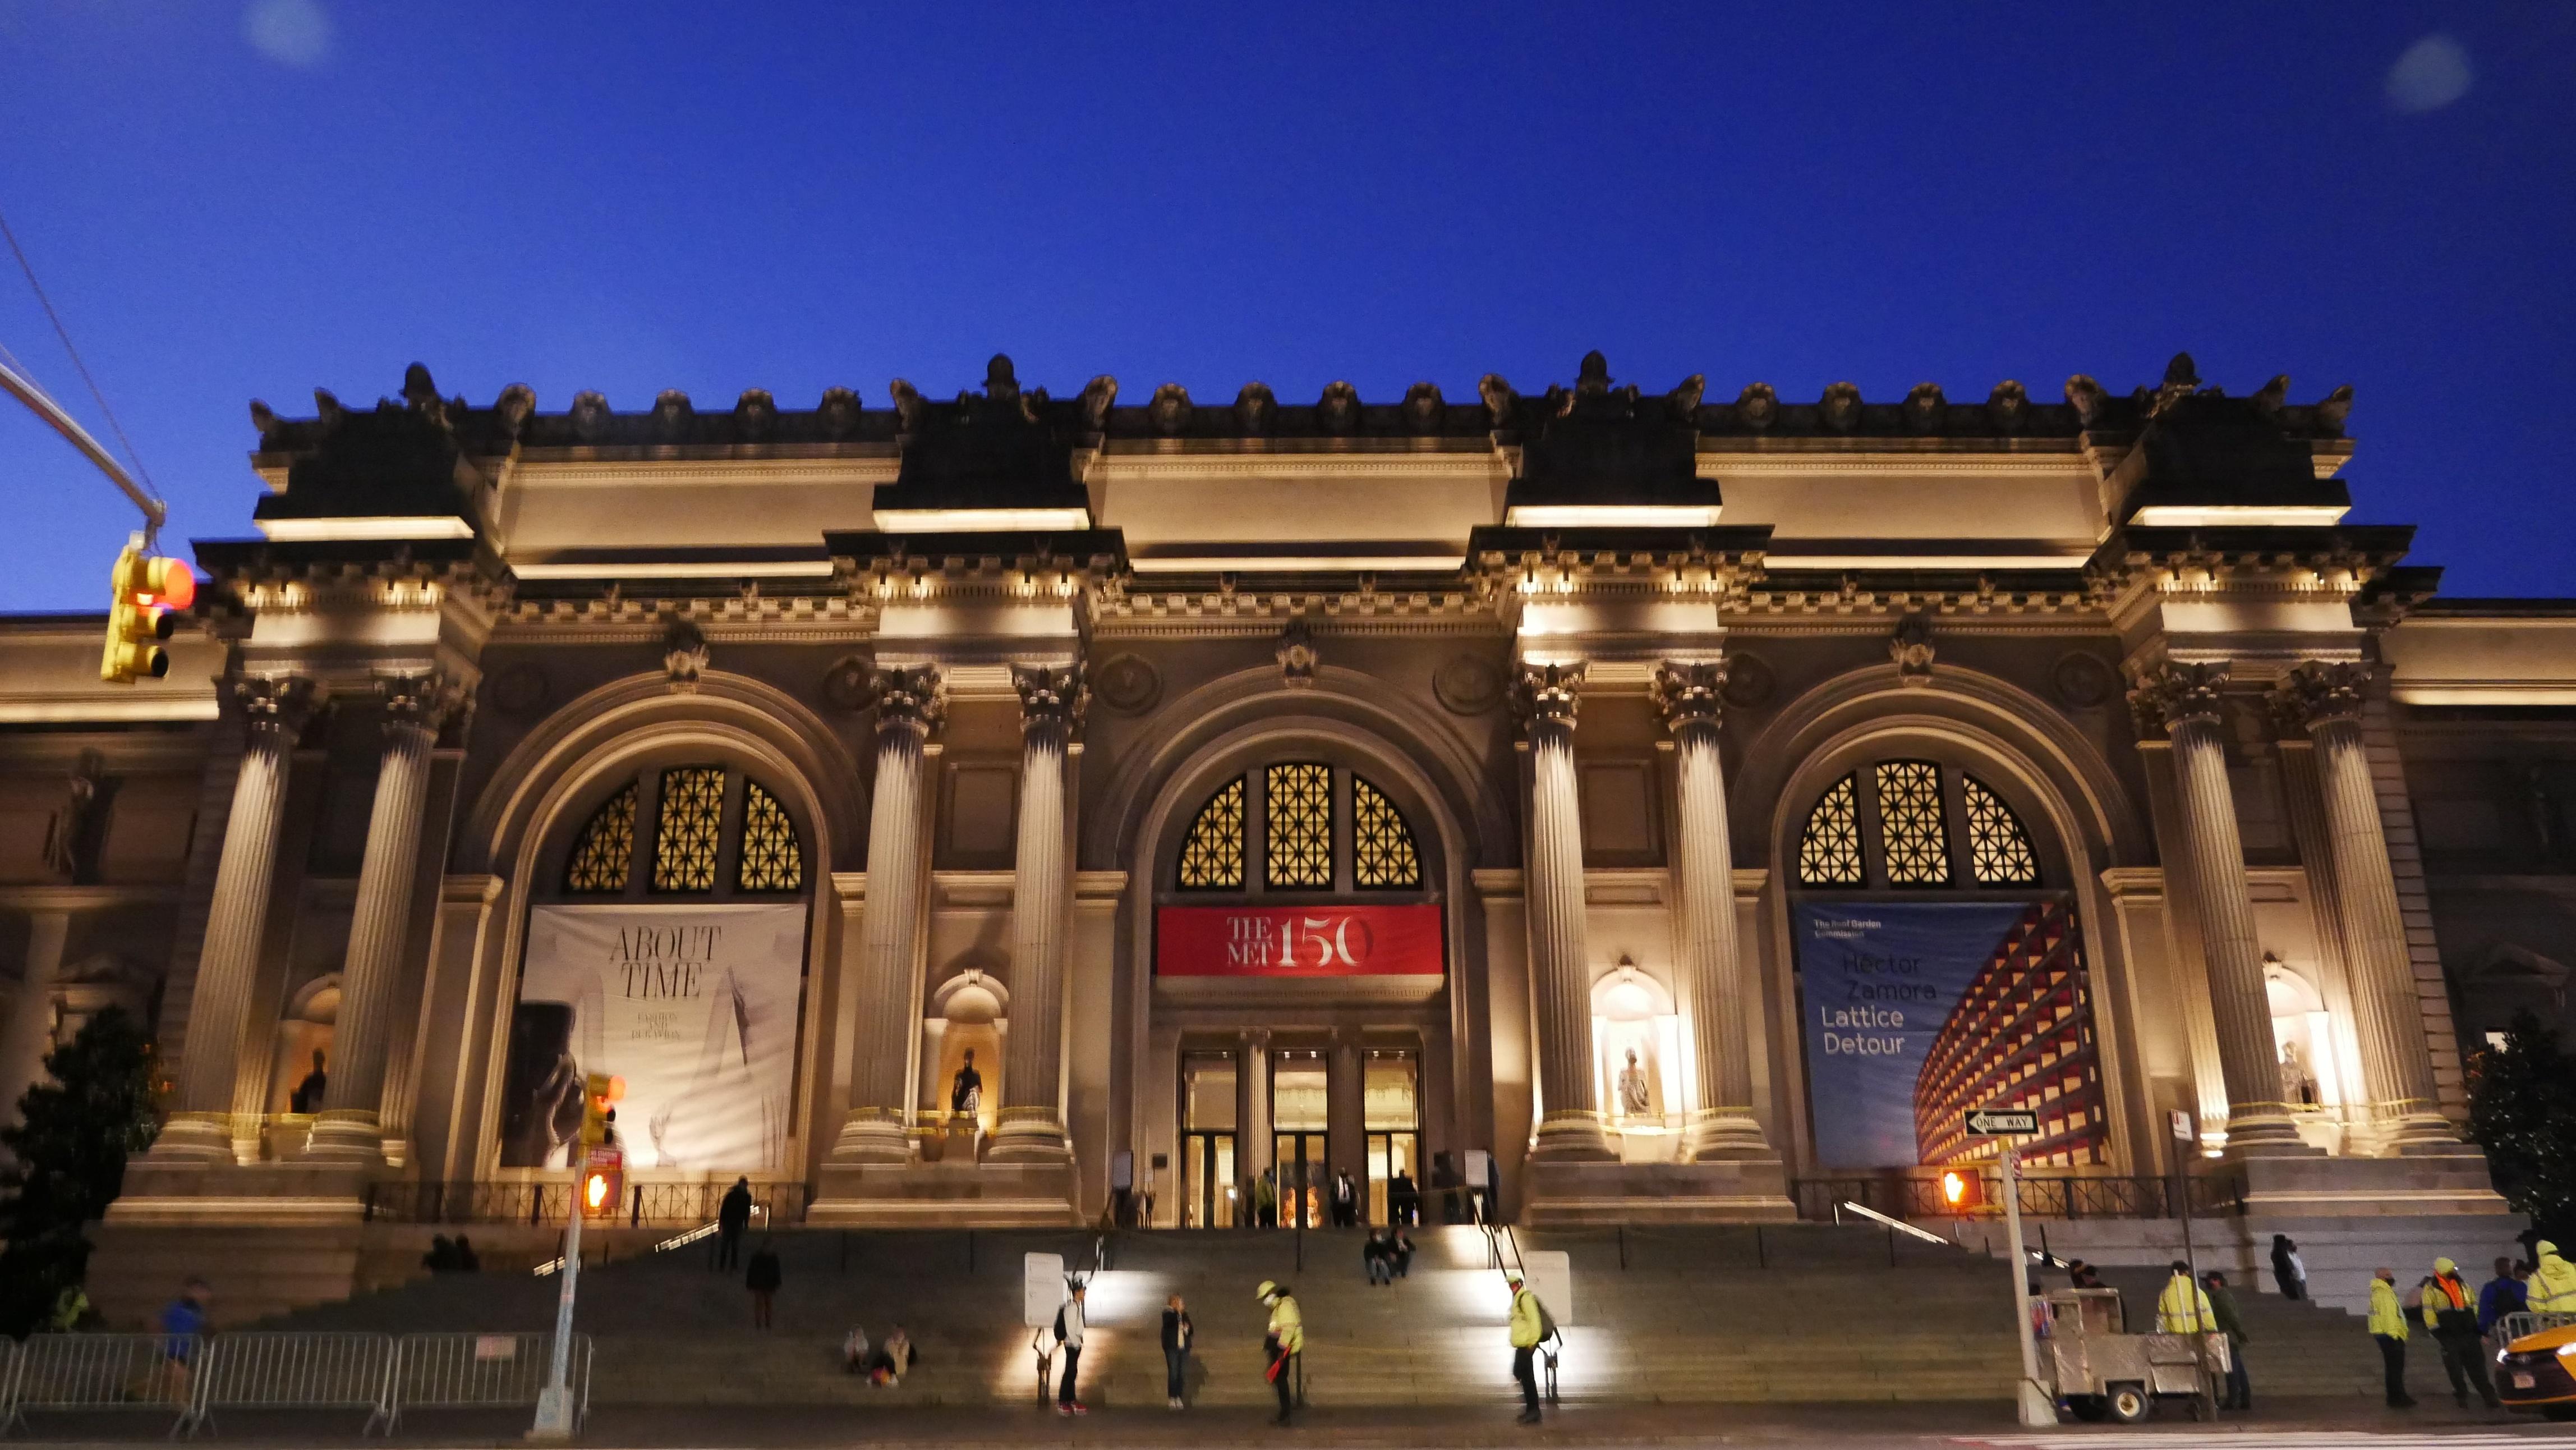 The Met's facade